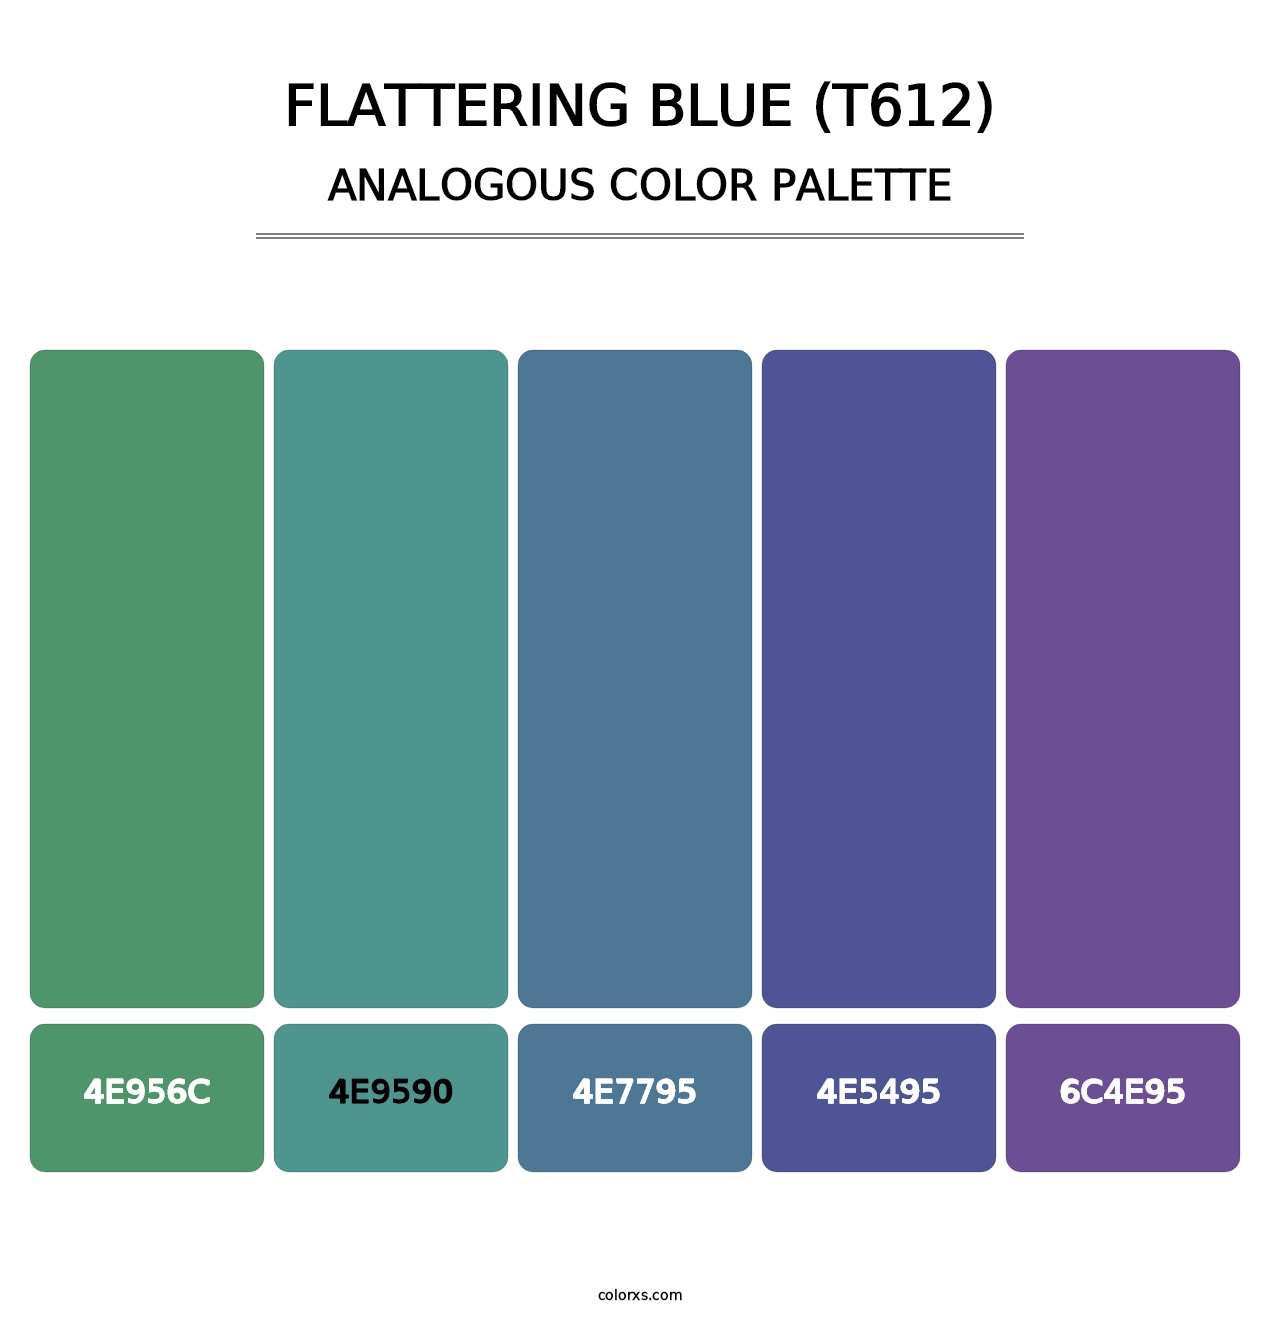 Flattering Blue (T612) - Analogous Color Palette